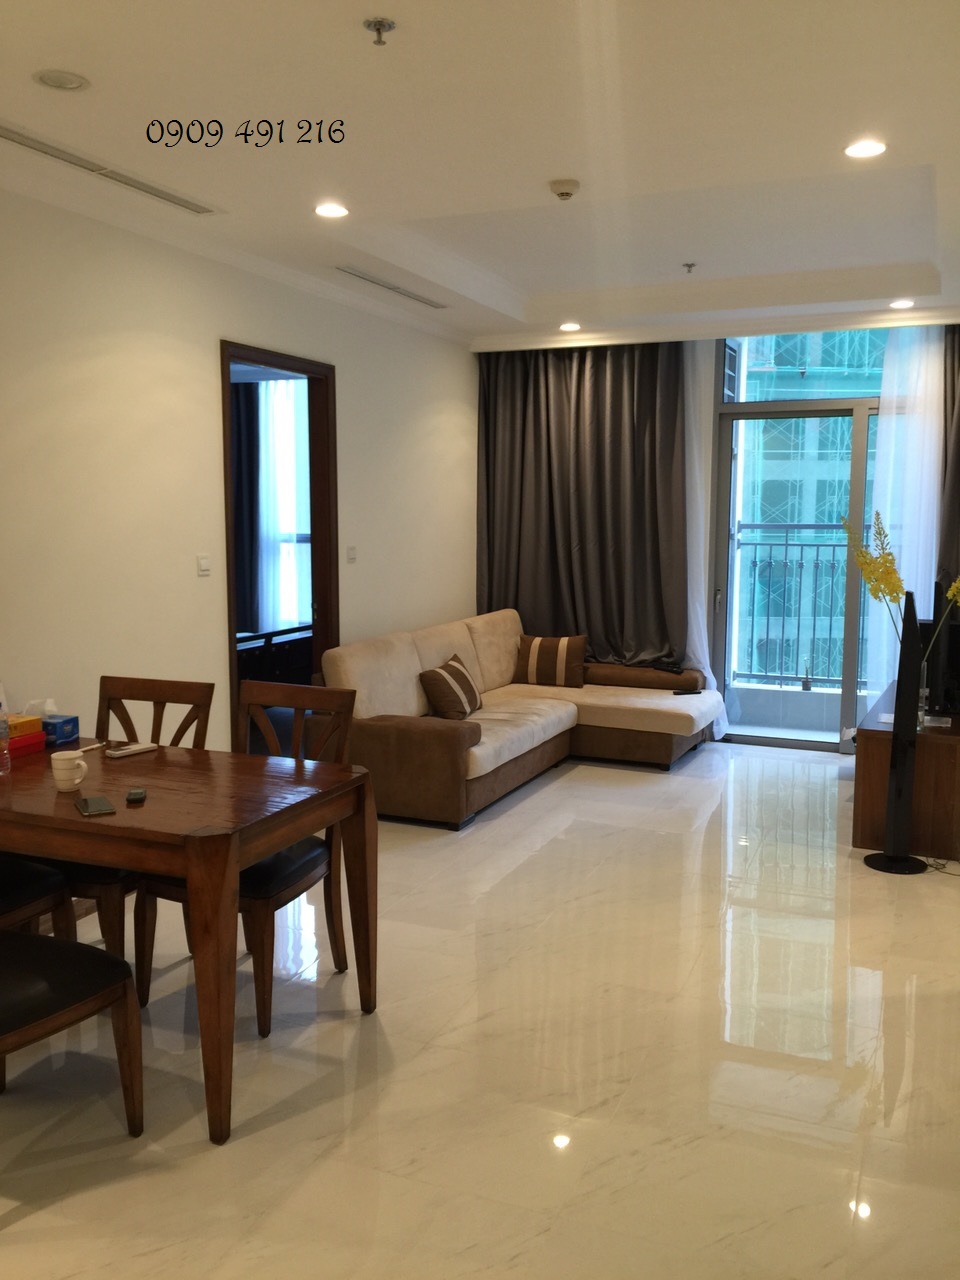 Cho thuê căn hộ Vinhomes Tân Cảng, giá rẻ- 0909491216